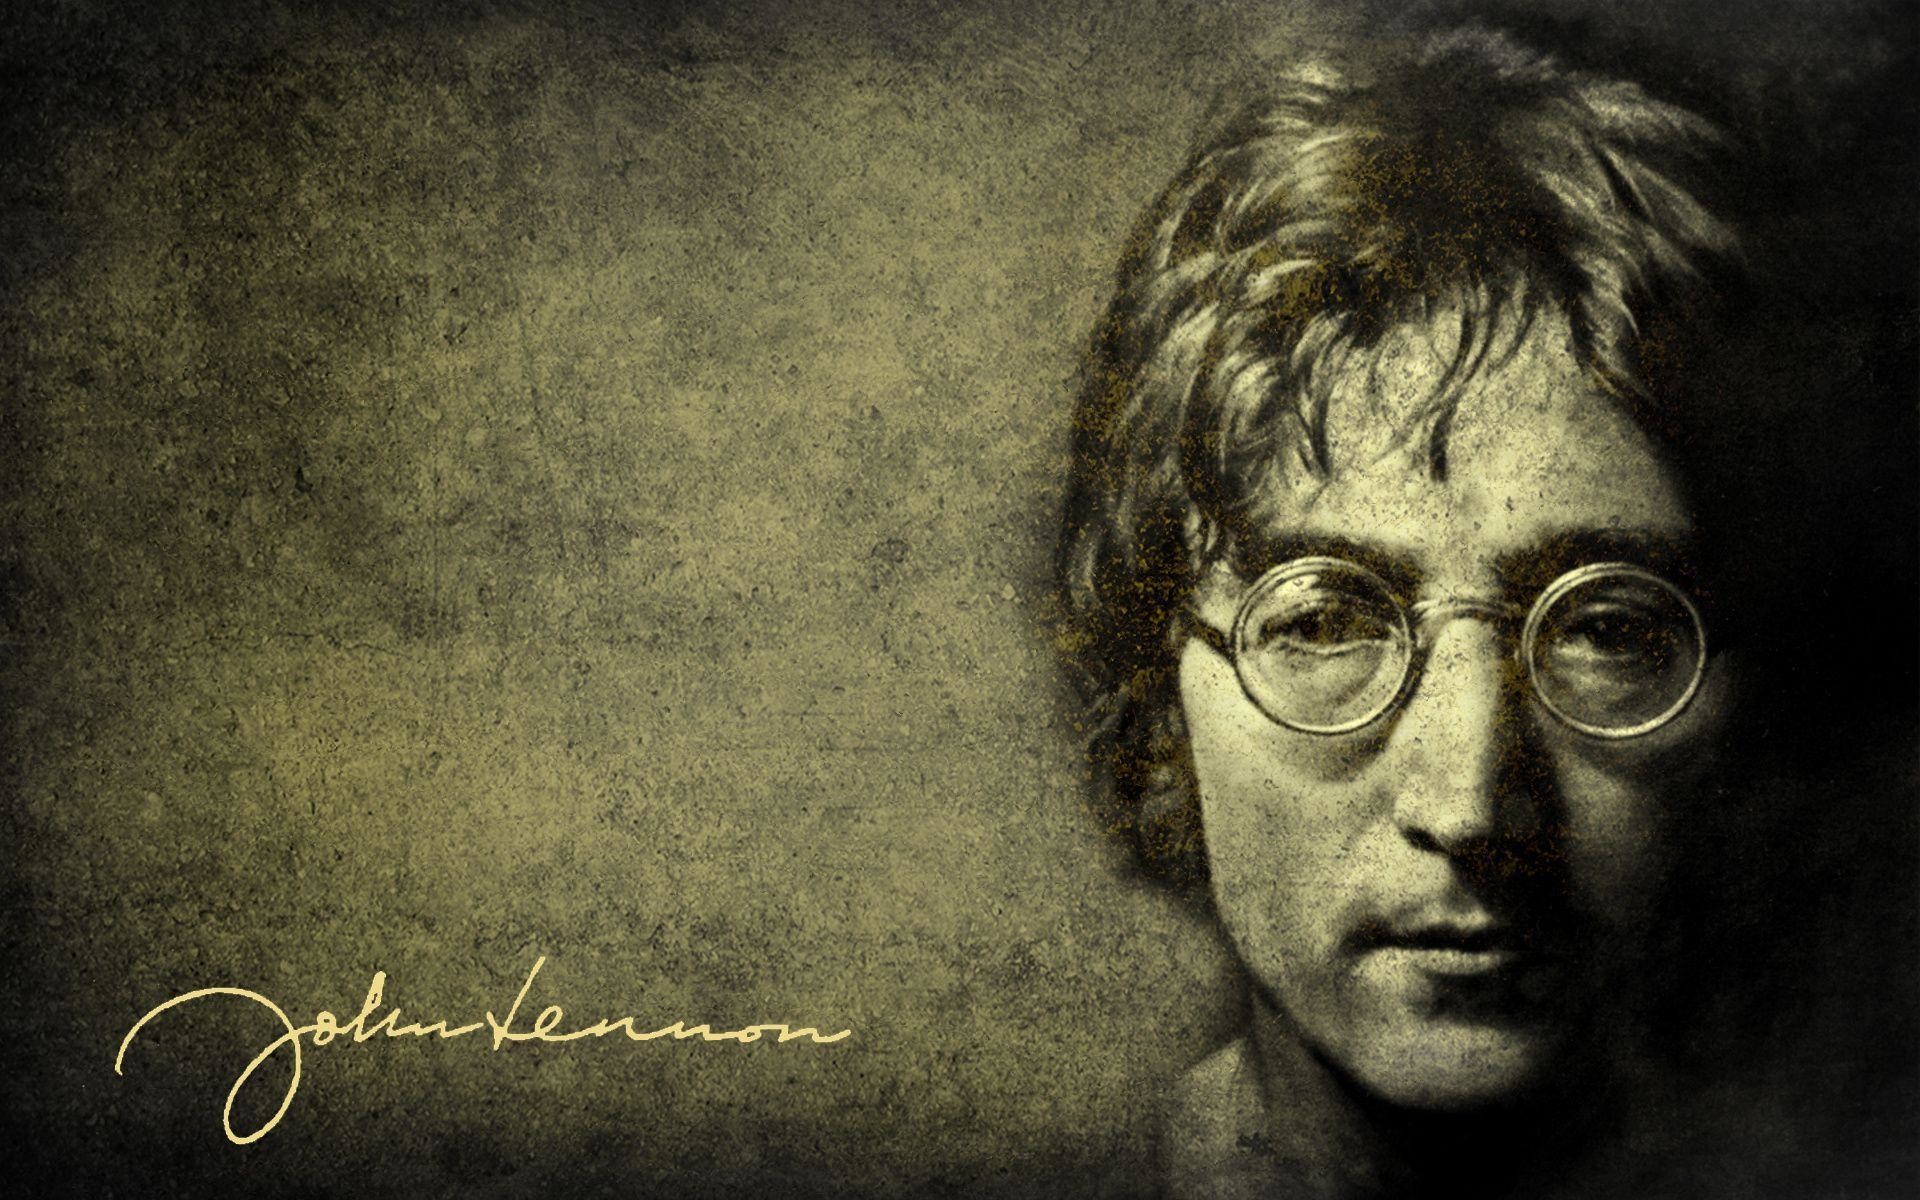 John Lennon Wallpaper John Lennon Pictures Cool Wallpapers